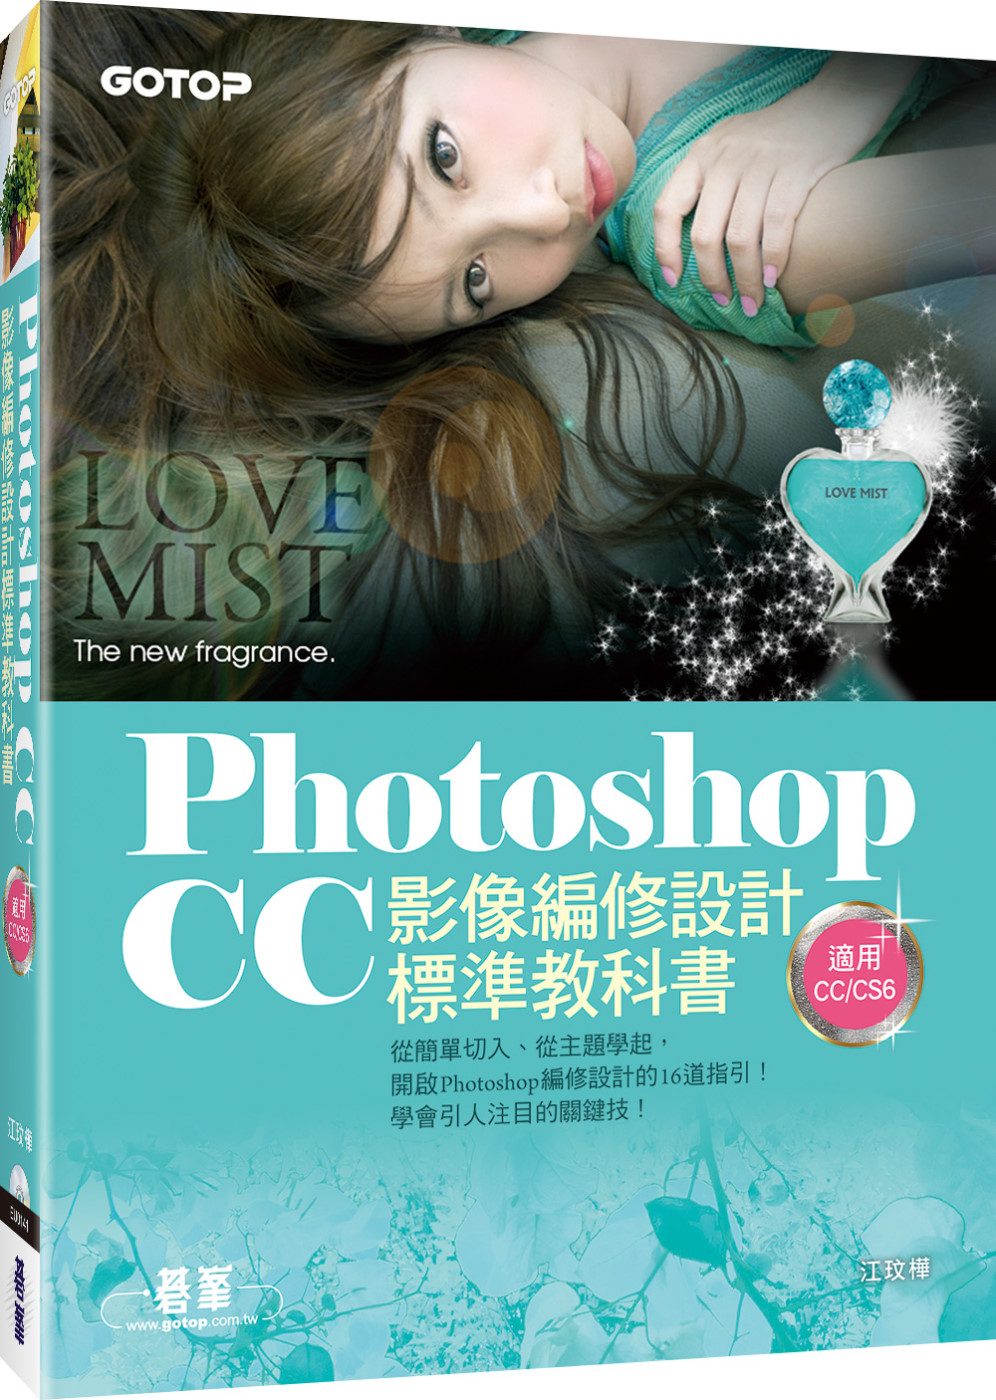 Photoshop CC影像編修設計標準教科書(適用CC/CS6) (附116頁超值PDF電子書/305張範例素材與完成檔)